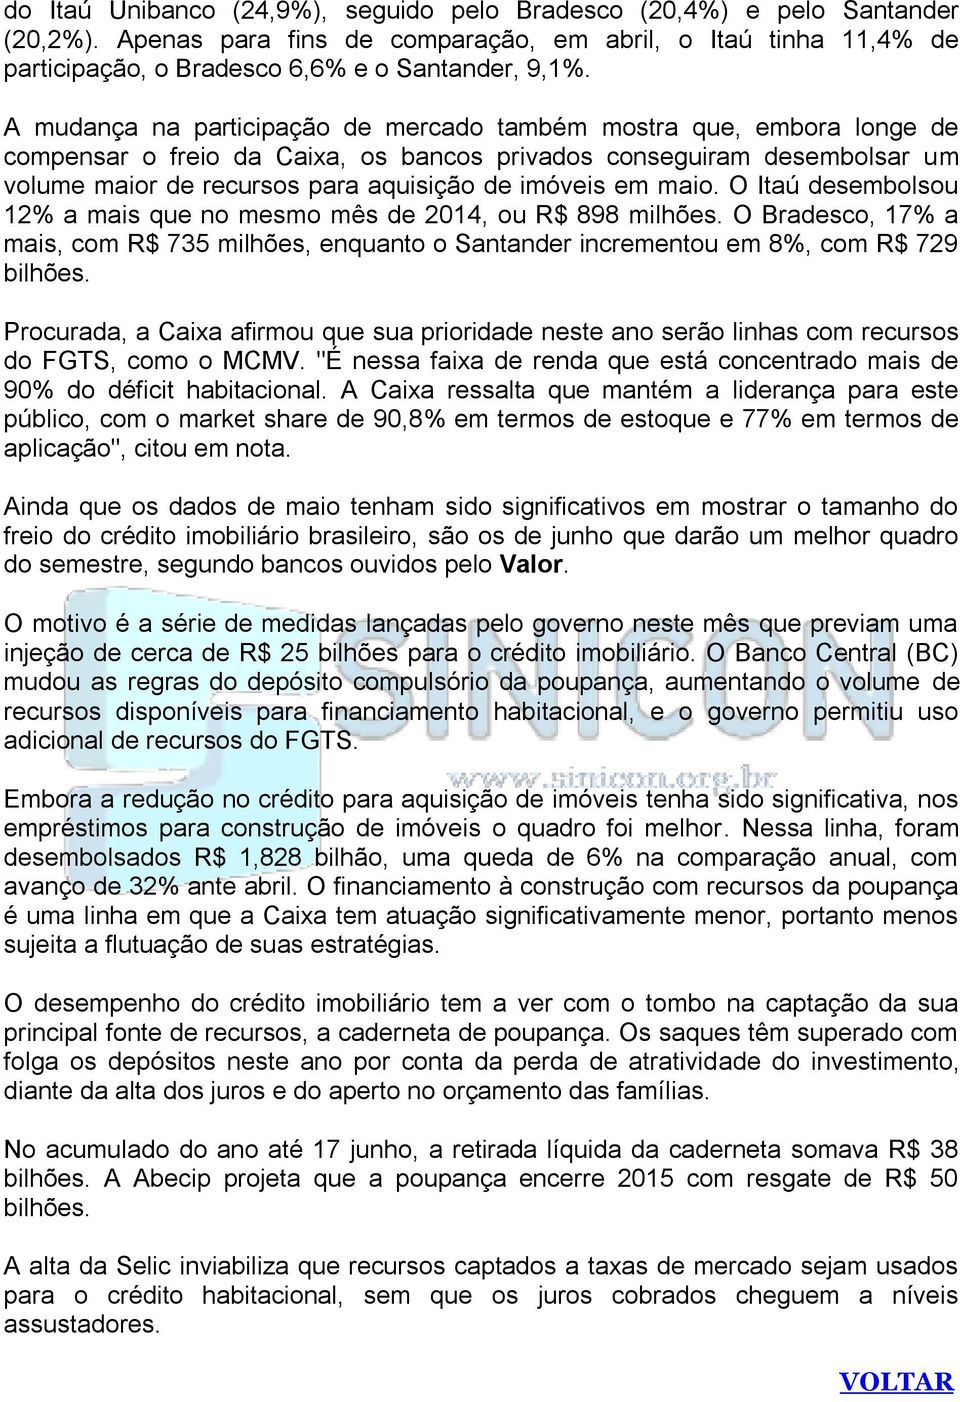 maio. O Itaú desembolsou 12% a mais que no mesmo mês de 2014, ou R$ 898 milhões. O Bradesco, 17% a mais, com R$ 735 milhões, enquanto o Santander incrementou em 8%, com R$ 729 bilhões.